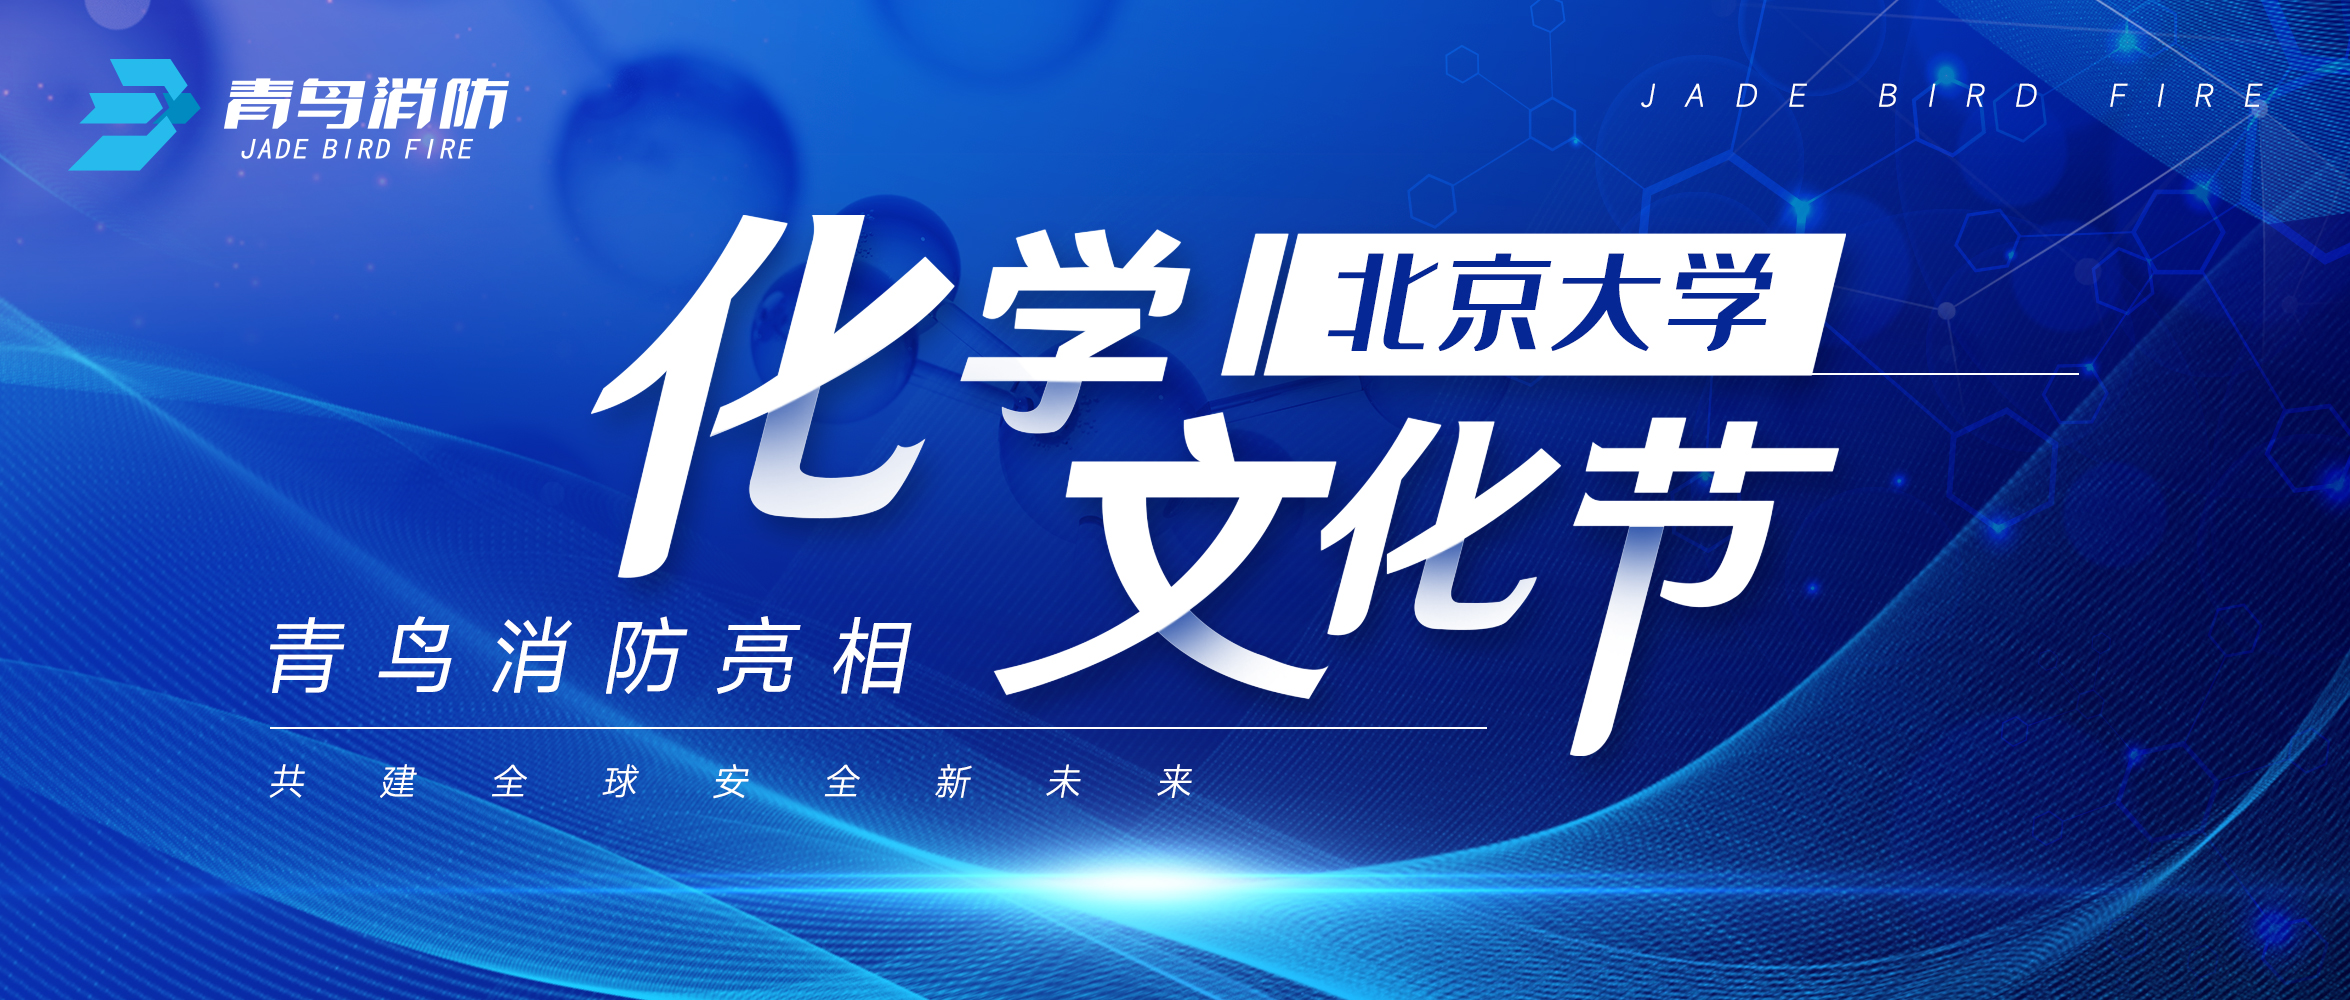 青鸟zoty中欧体育平台
亮相北京大学化学文化节